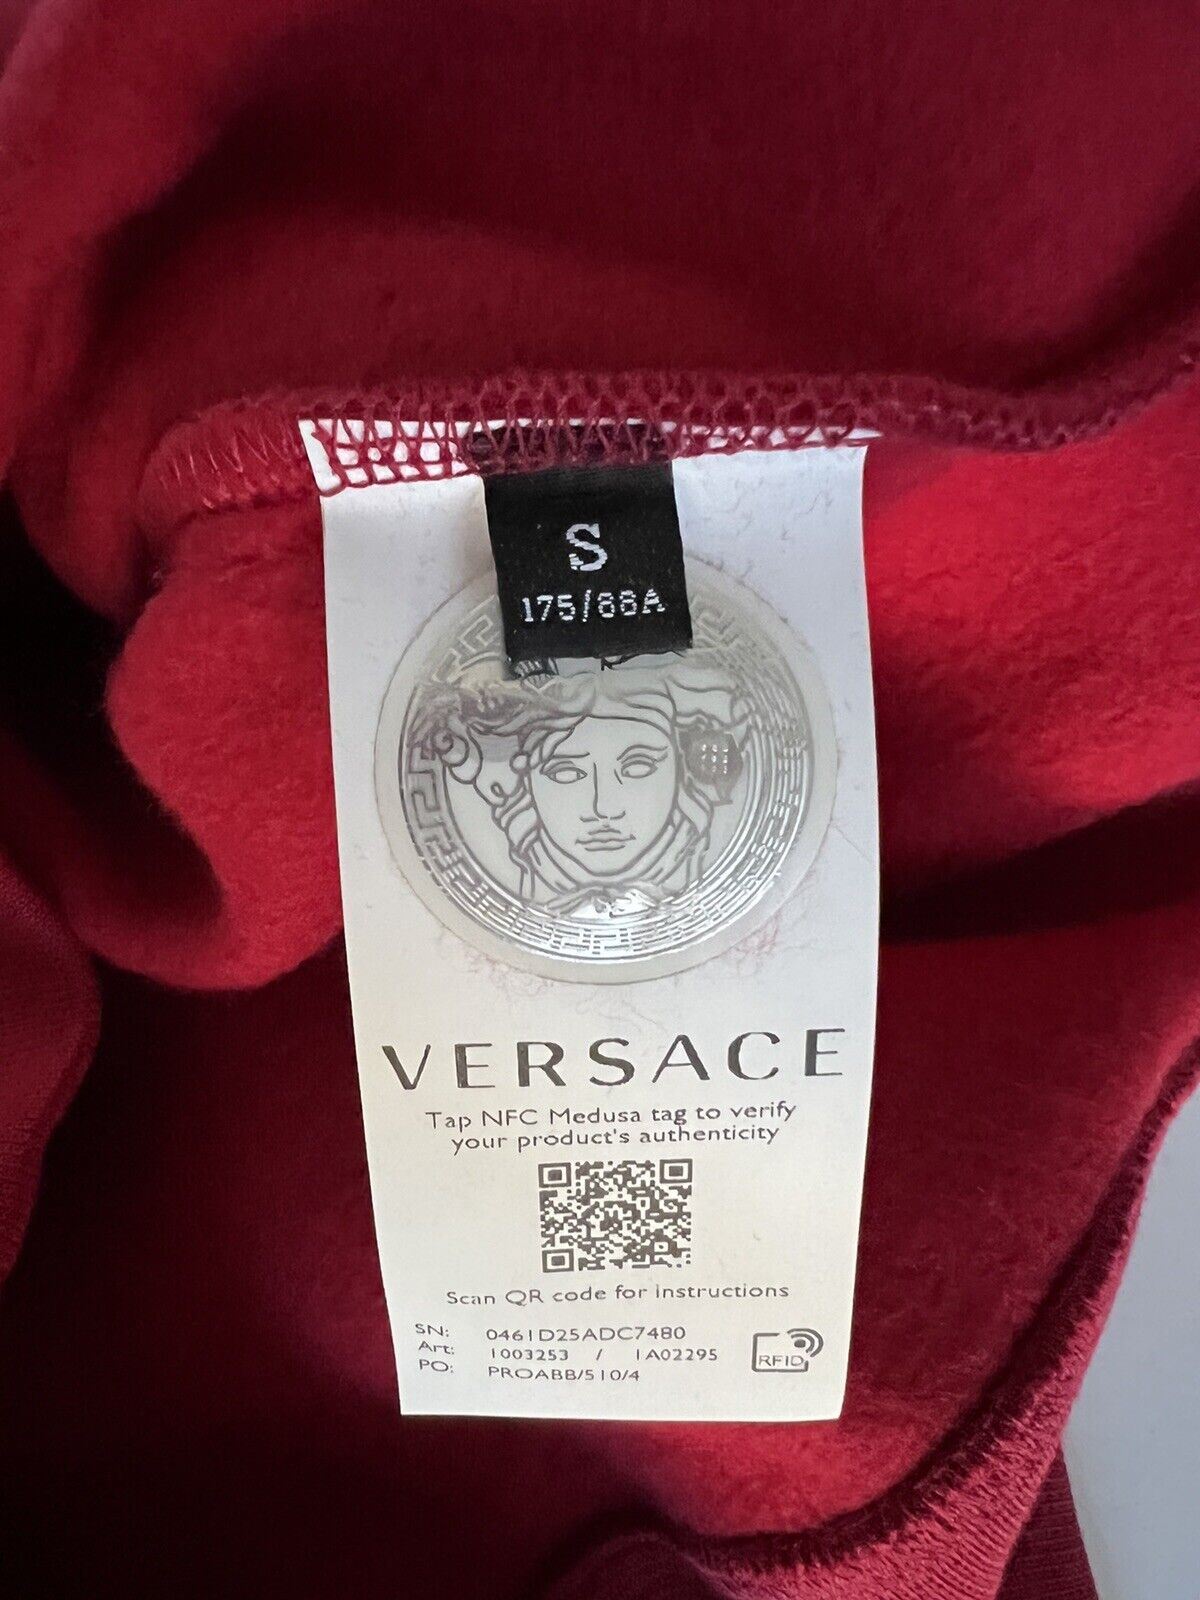 NWT $1150 Versace Толстовка с принтом Medusa Baroque и худи Красный S 1003253 